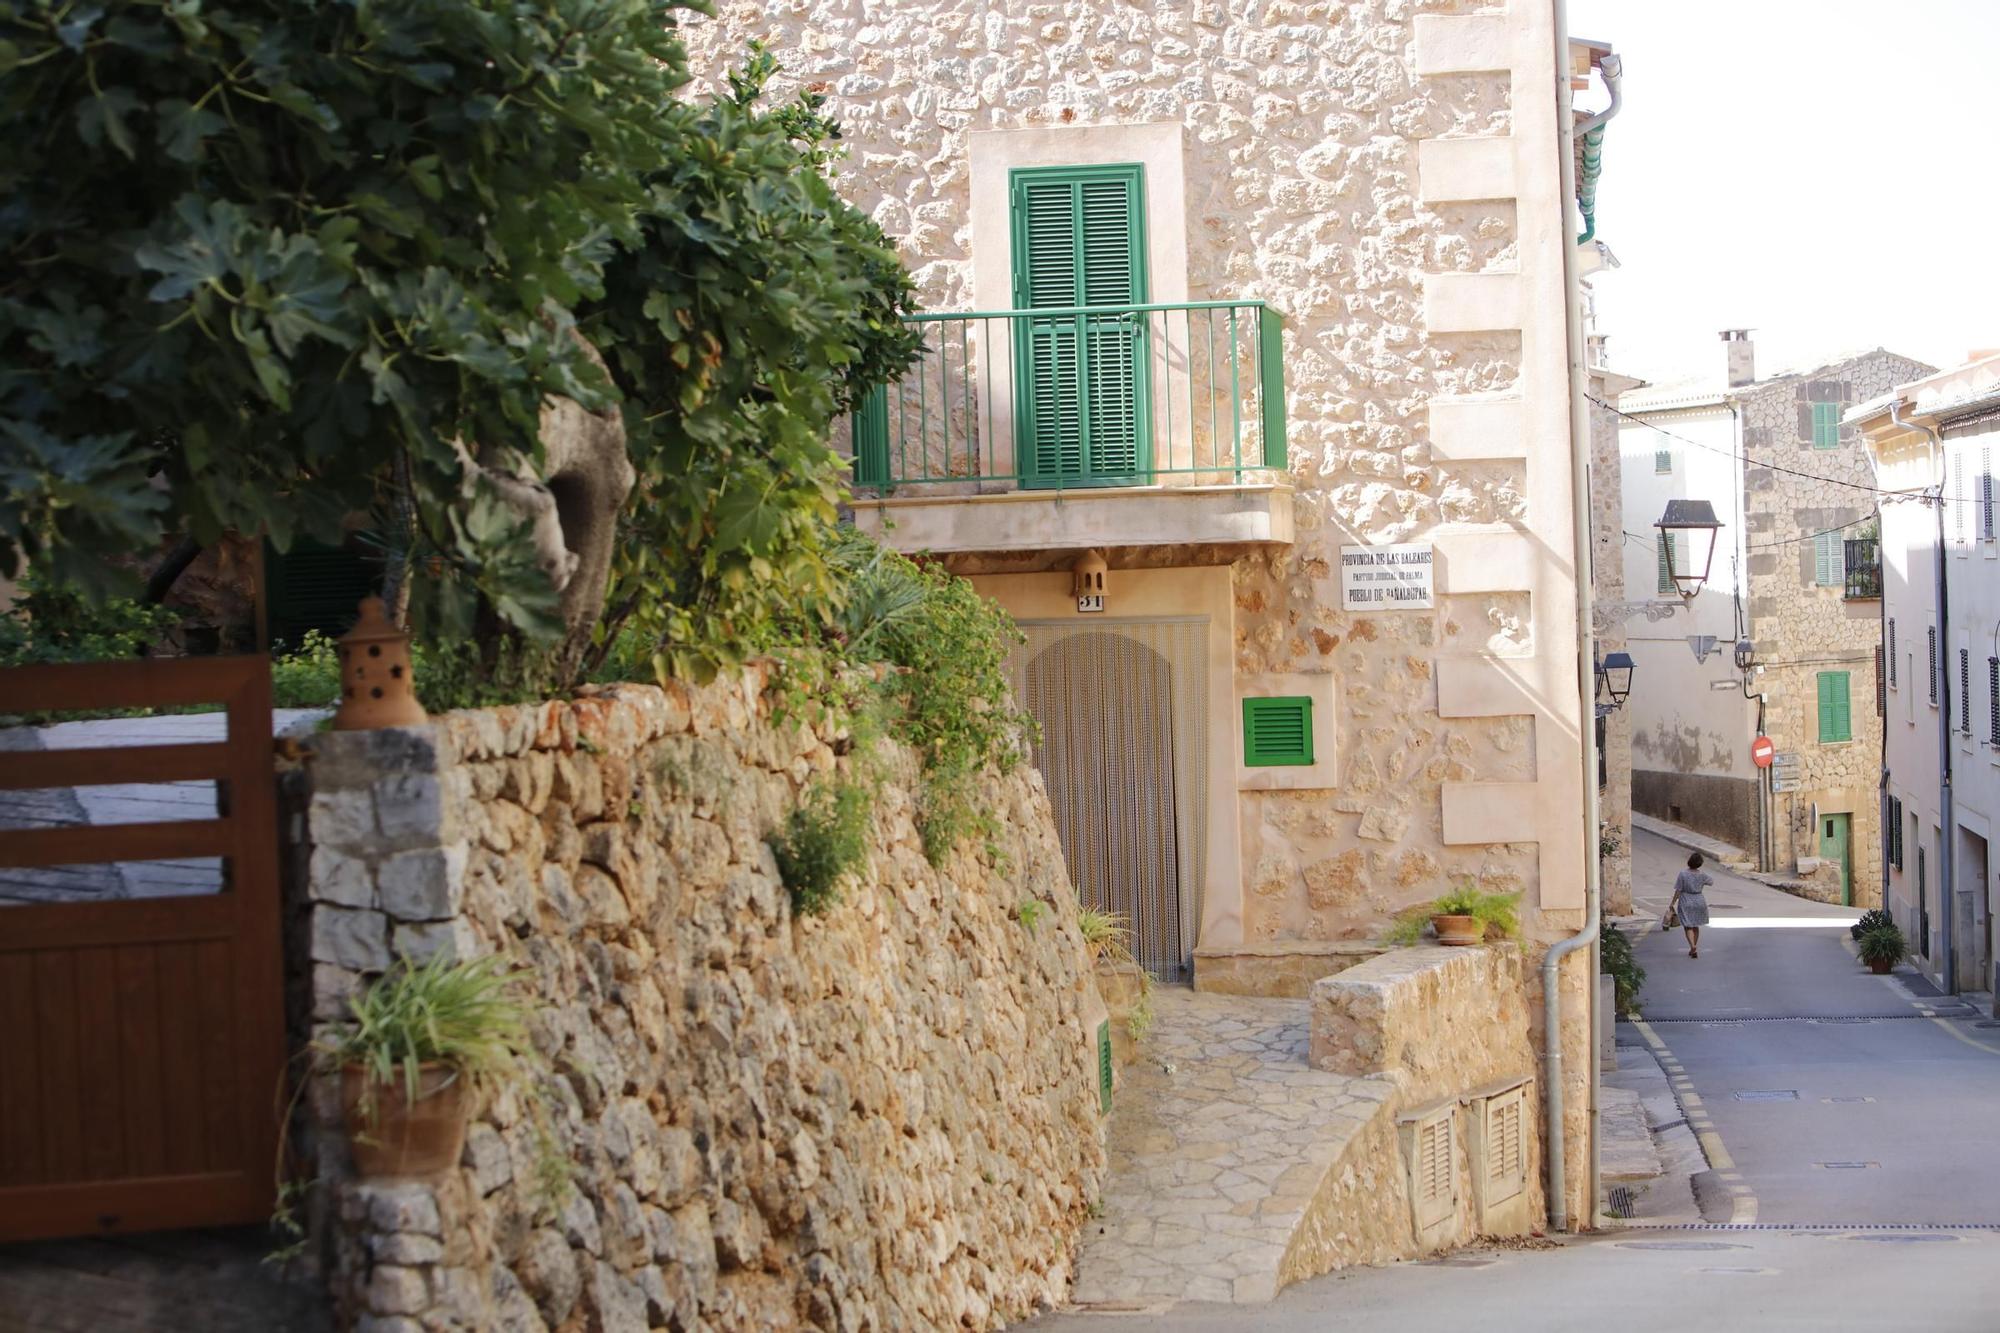 Urlaub auf Mallorca: In welchem traumhaften Dorf befinden wir uns hier?